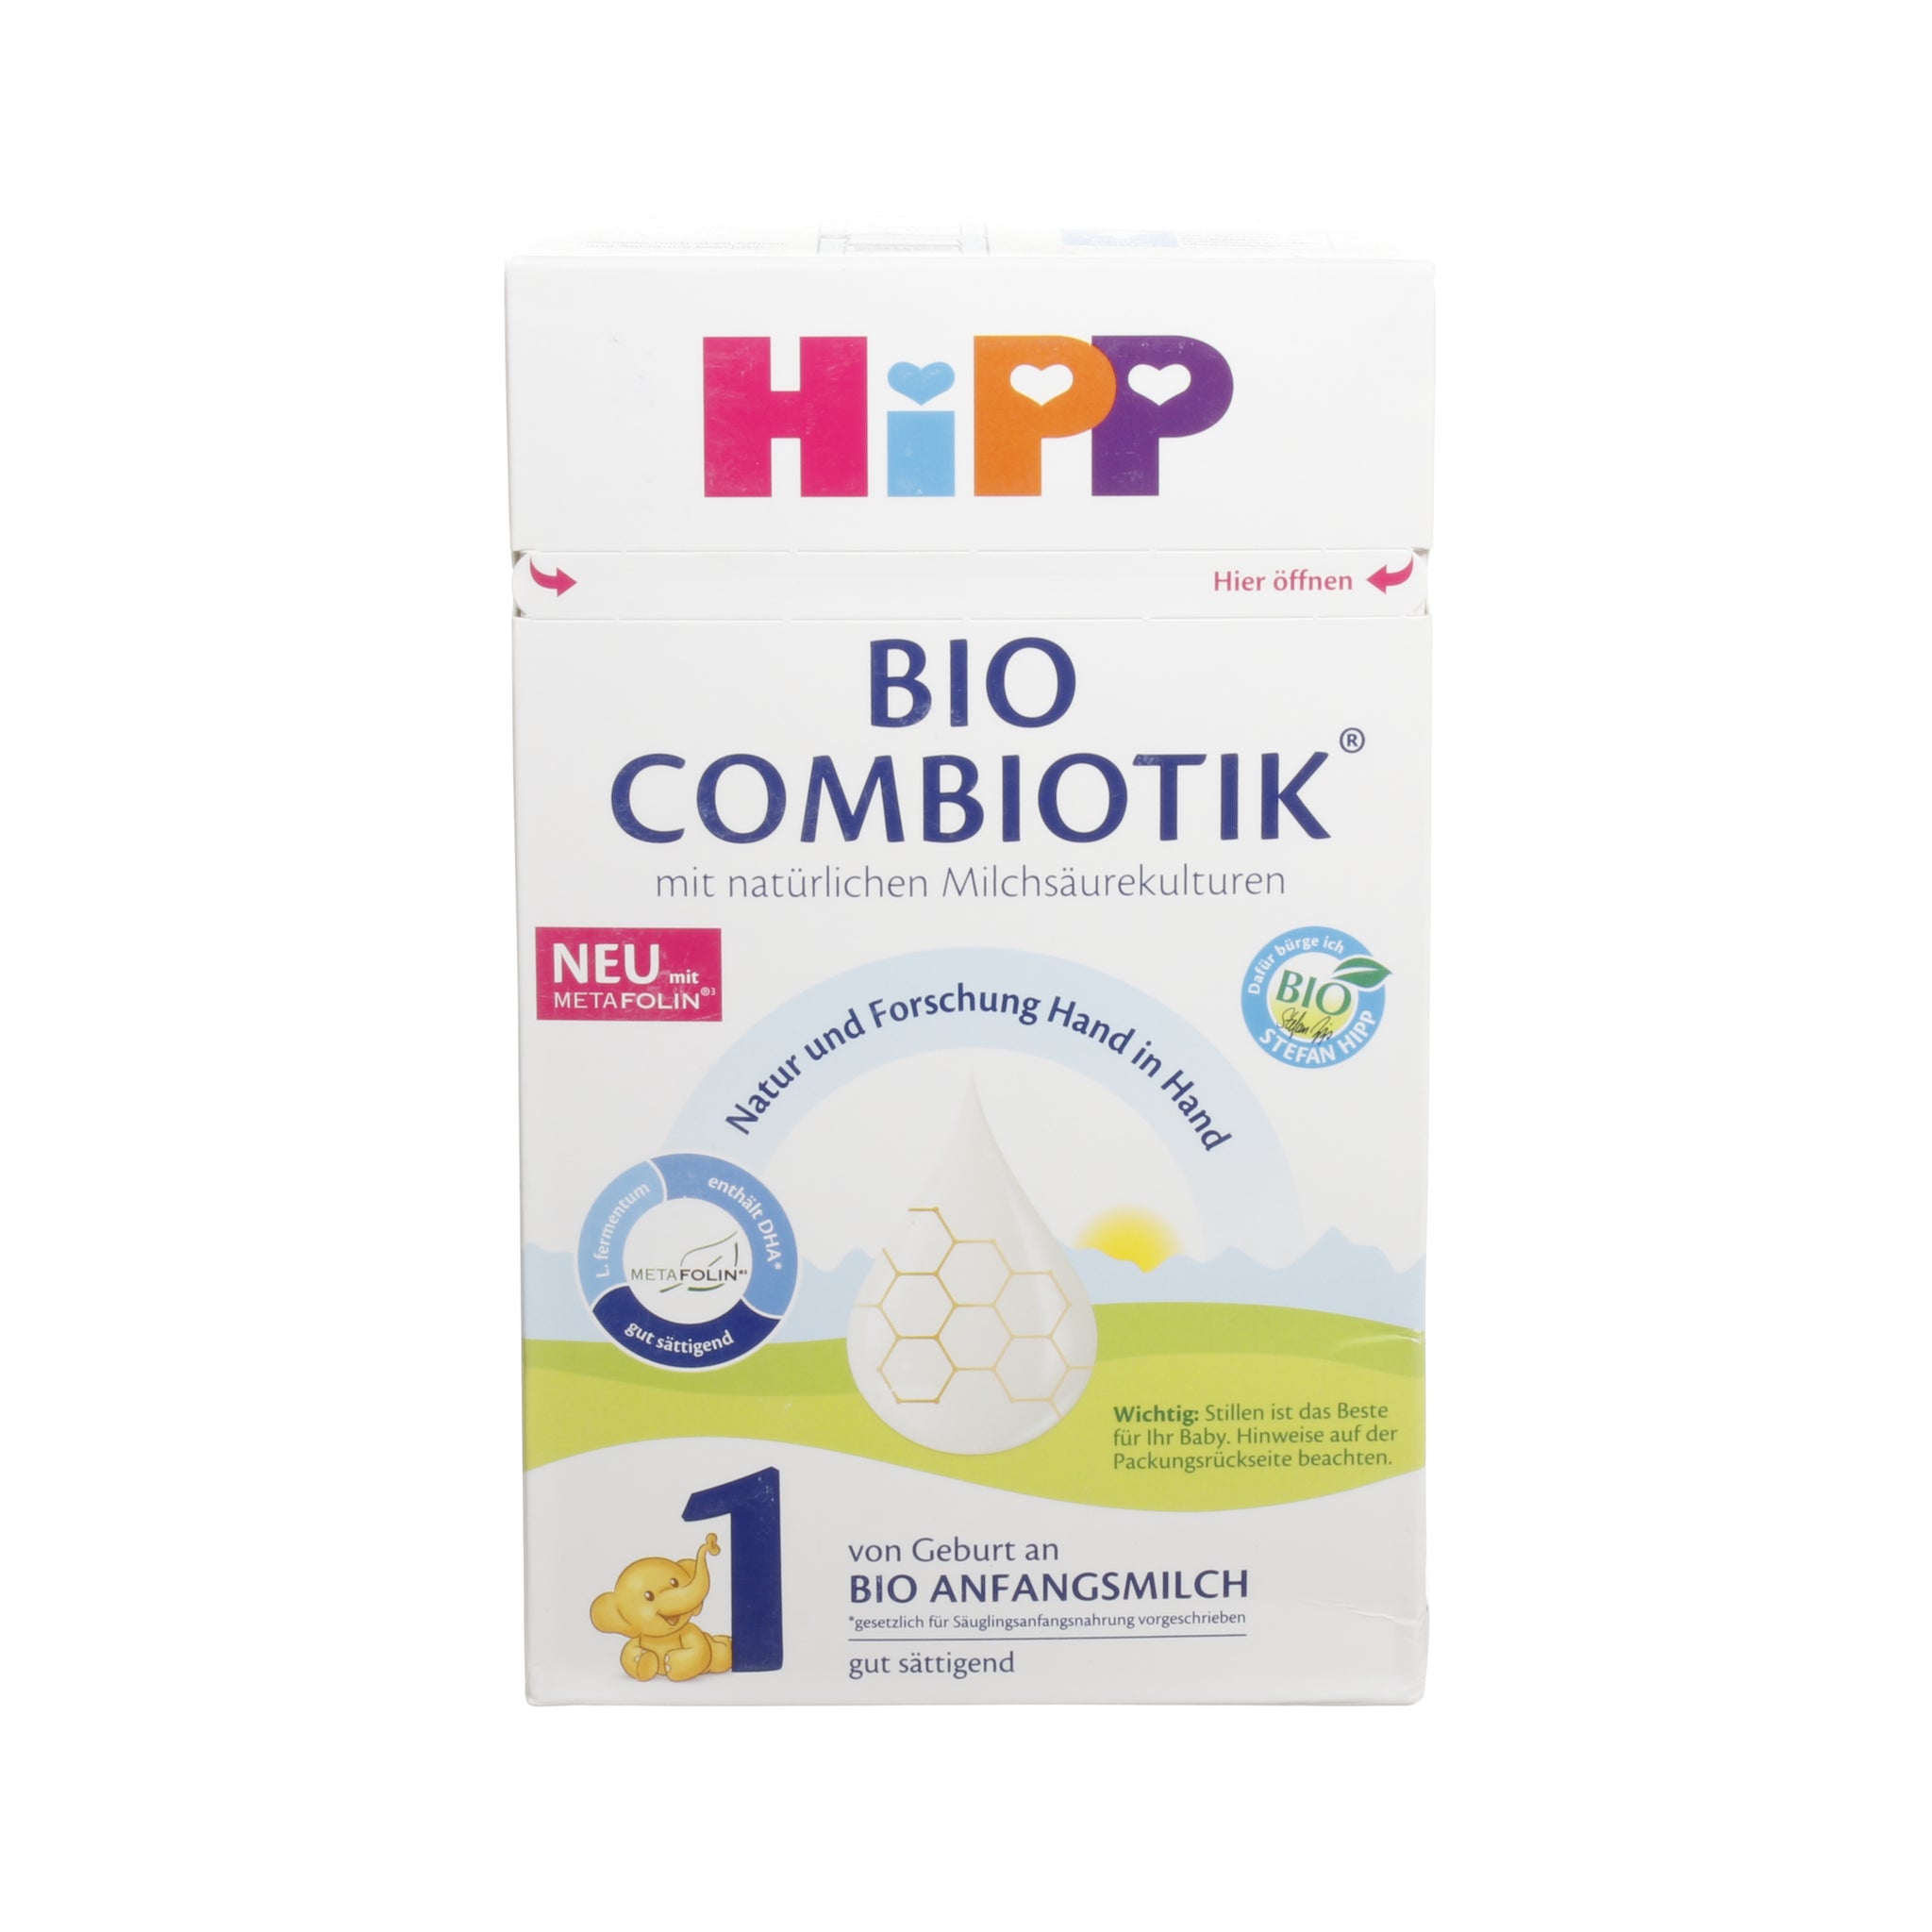 Hipp 1 Bio Combiotic, 600g - firstorganicbaby